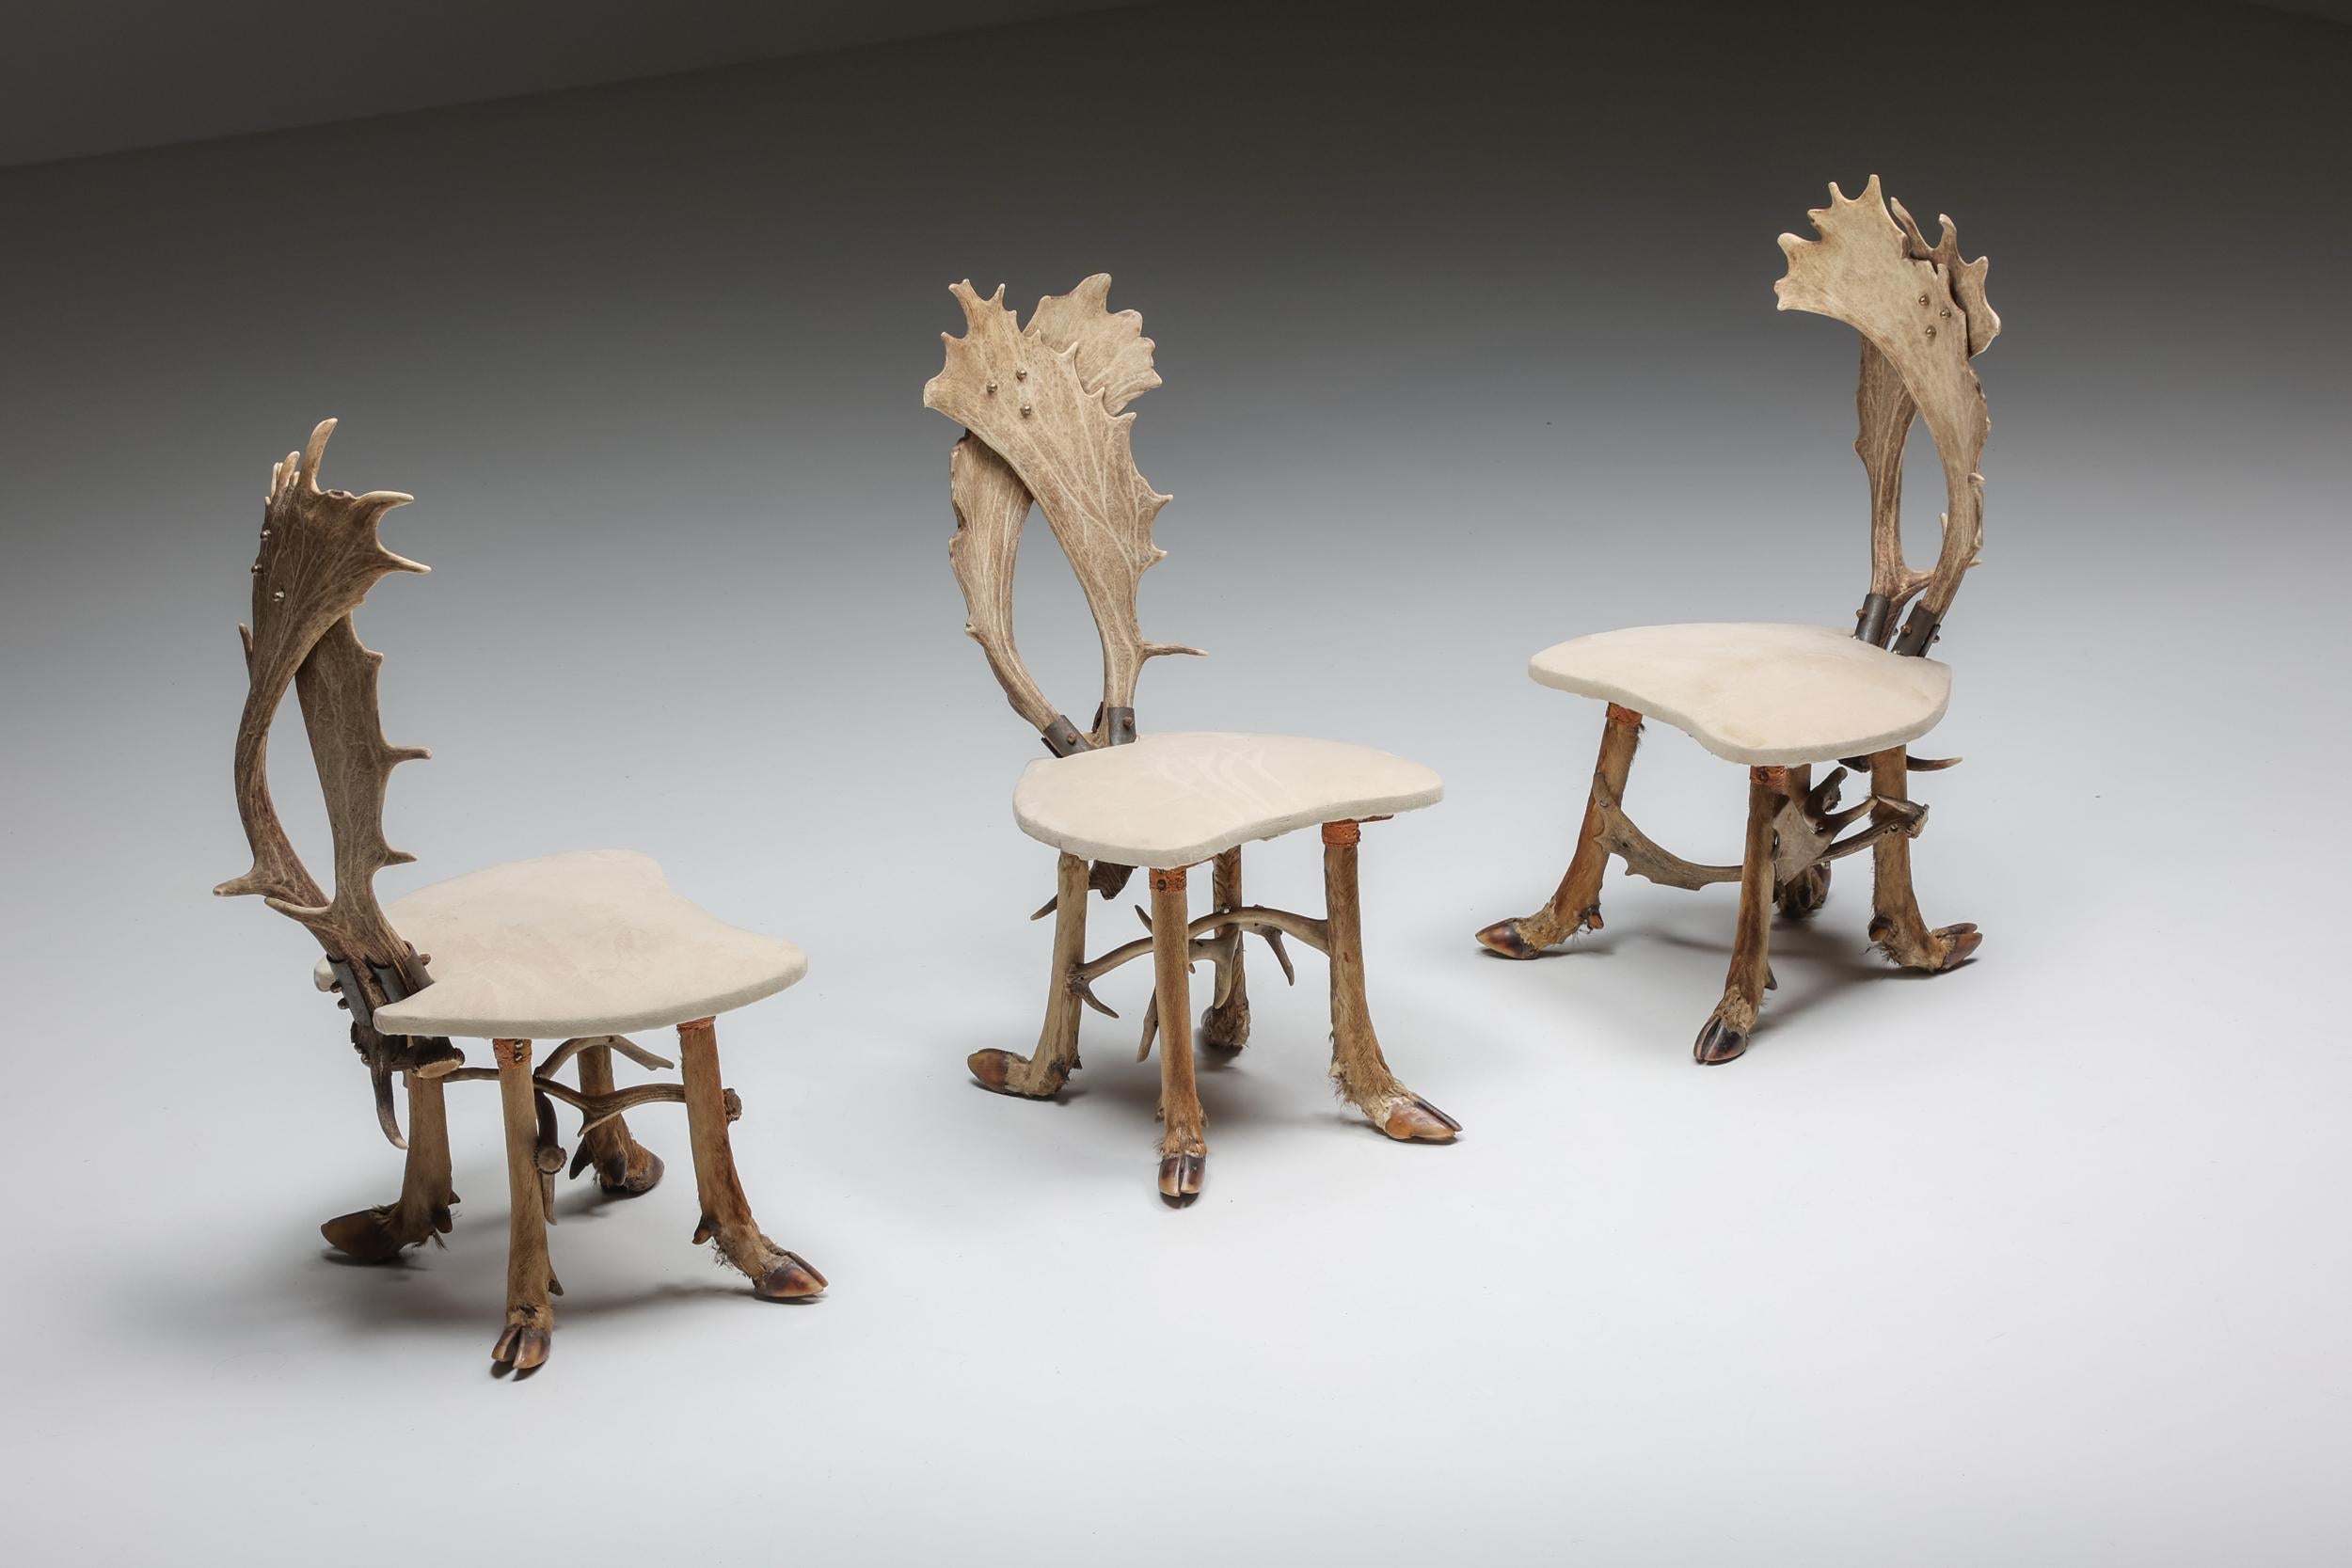 Ensemble de chaises de chasse et table assortie - années 1950

Chaises de chasse du milieu du siècle, ensemble de trois, fabriquées dans les années 1950 en Suède. Le dossier des chaises est constitué de deux bois de cerf, tandis que les pieds sont